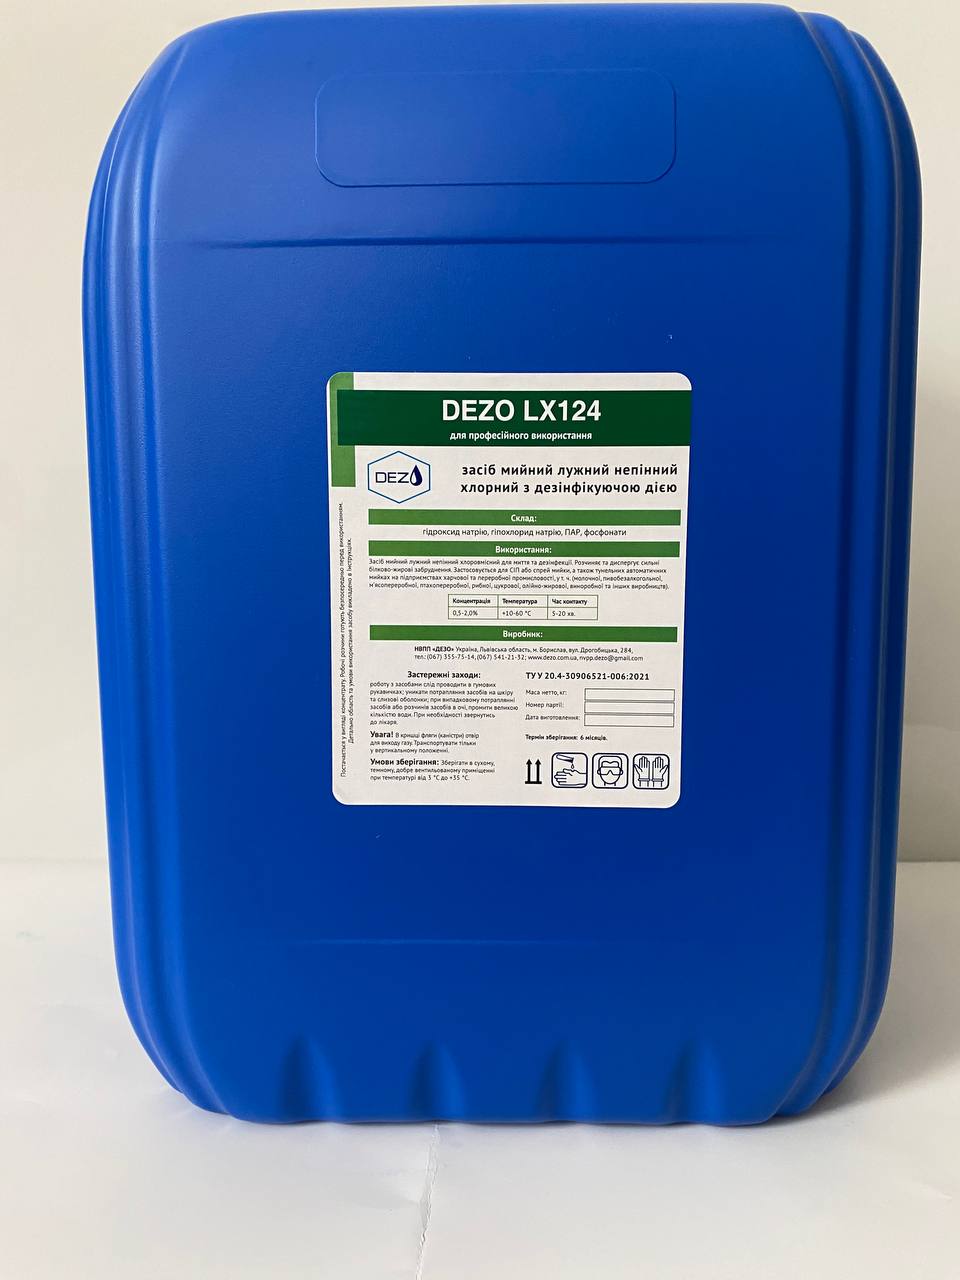 Засіб мийний лужний пінний хлорний з дезінфікуючою дією DEZO LX124, 10 кг